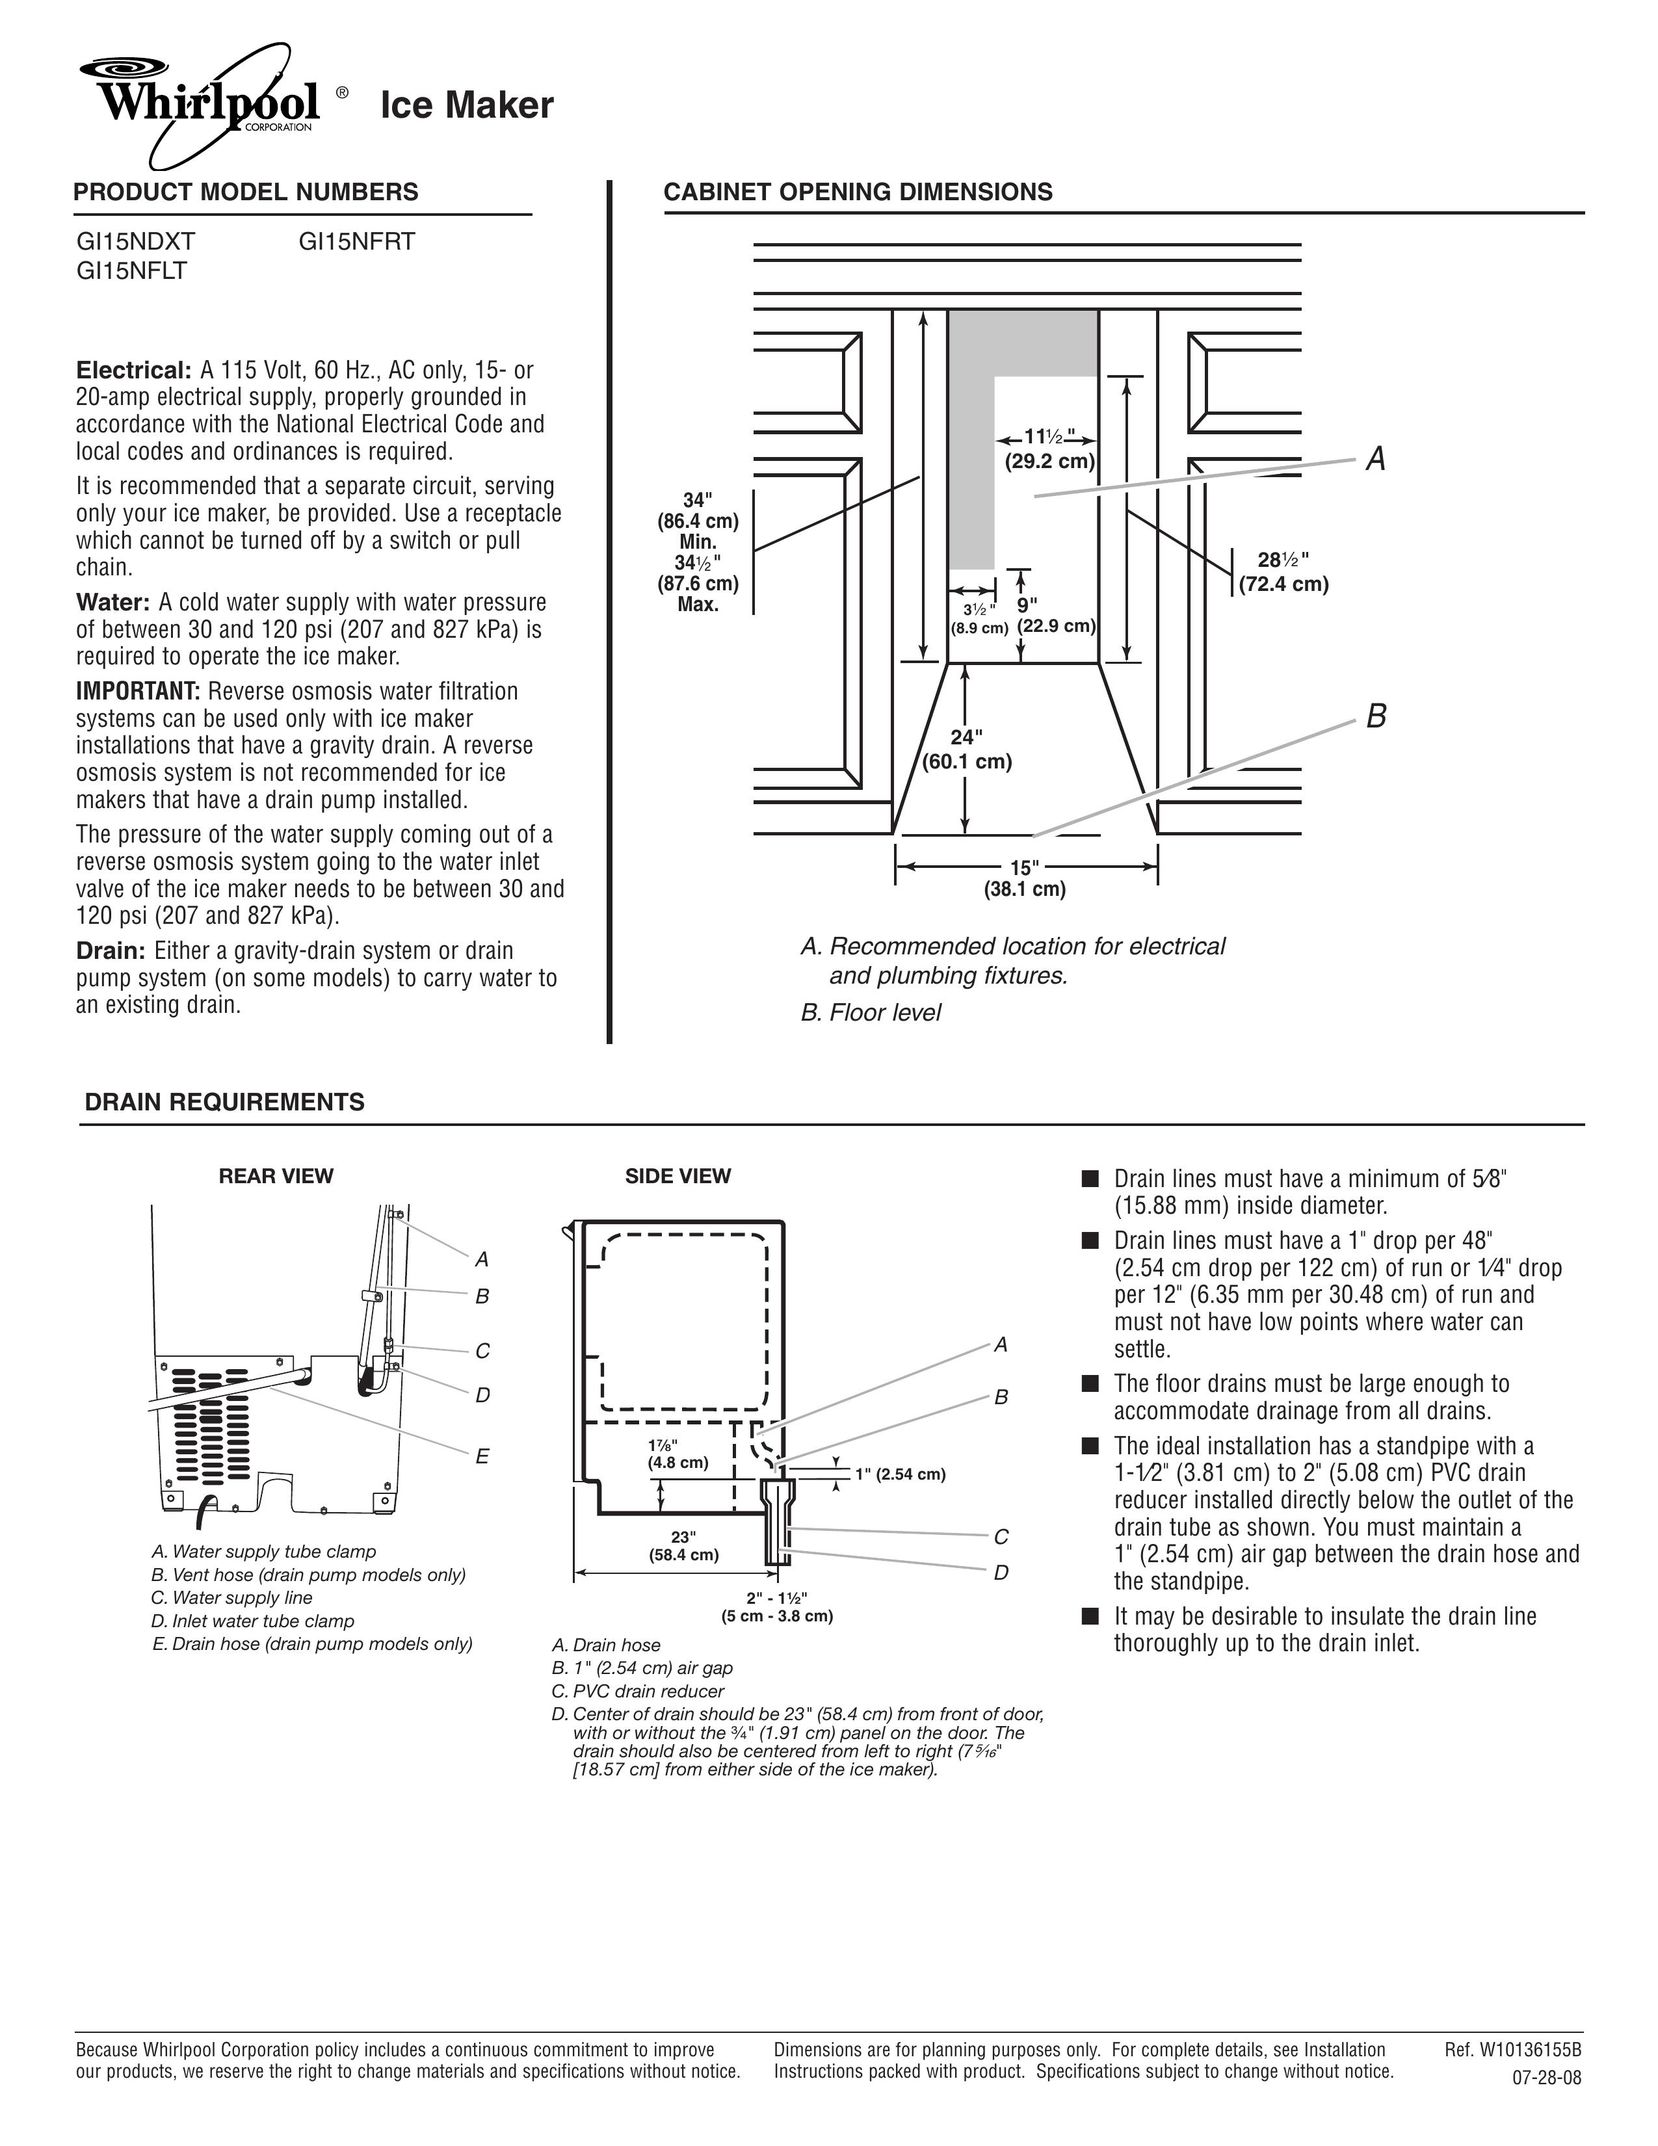 Whirlpool GI15NFLT Ice Maker User Manual